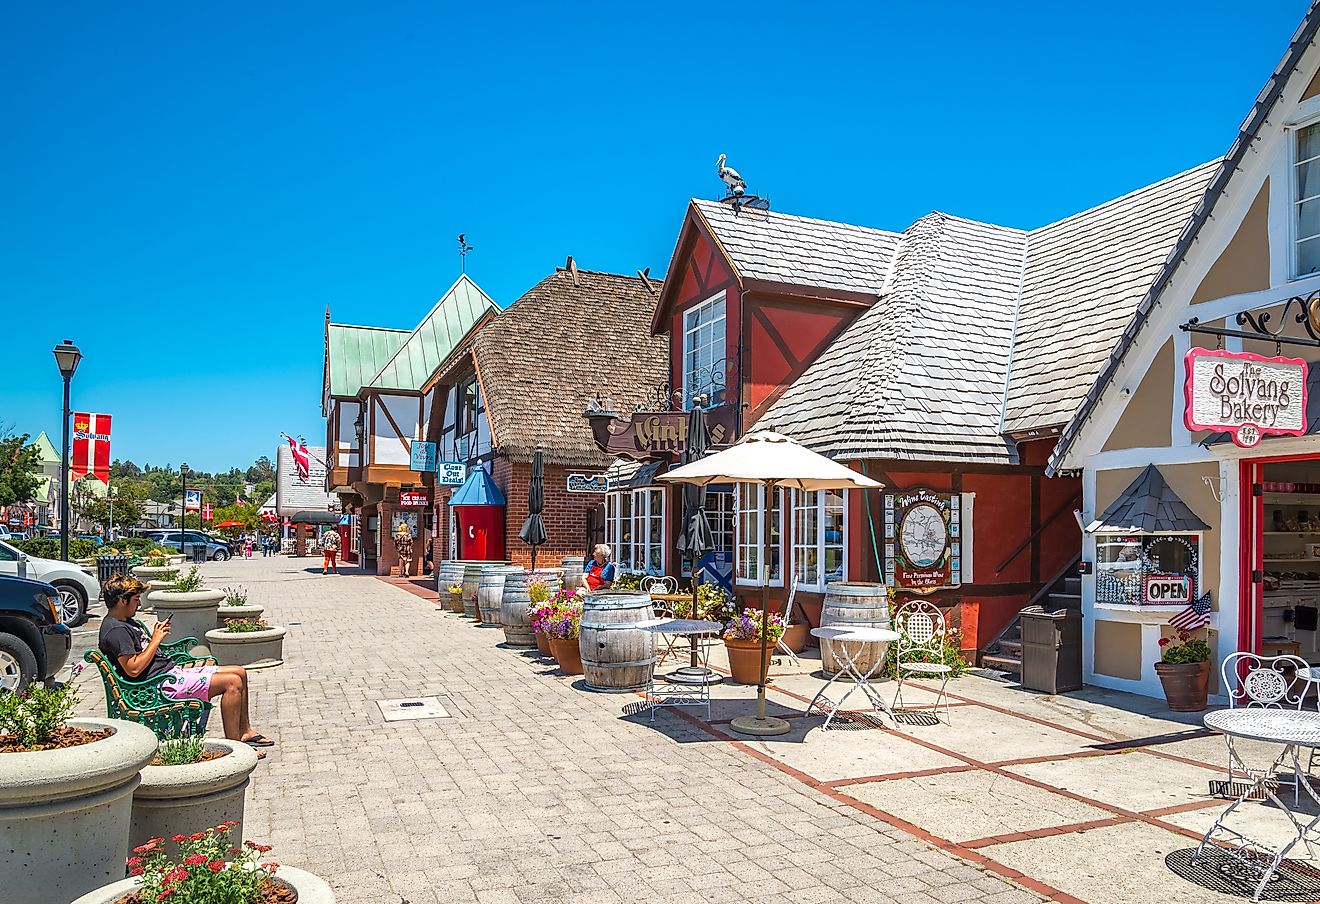 House in hte Danish style, Solvang village in Santa Barbara County, California